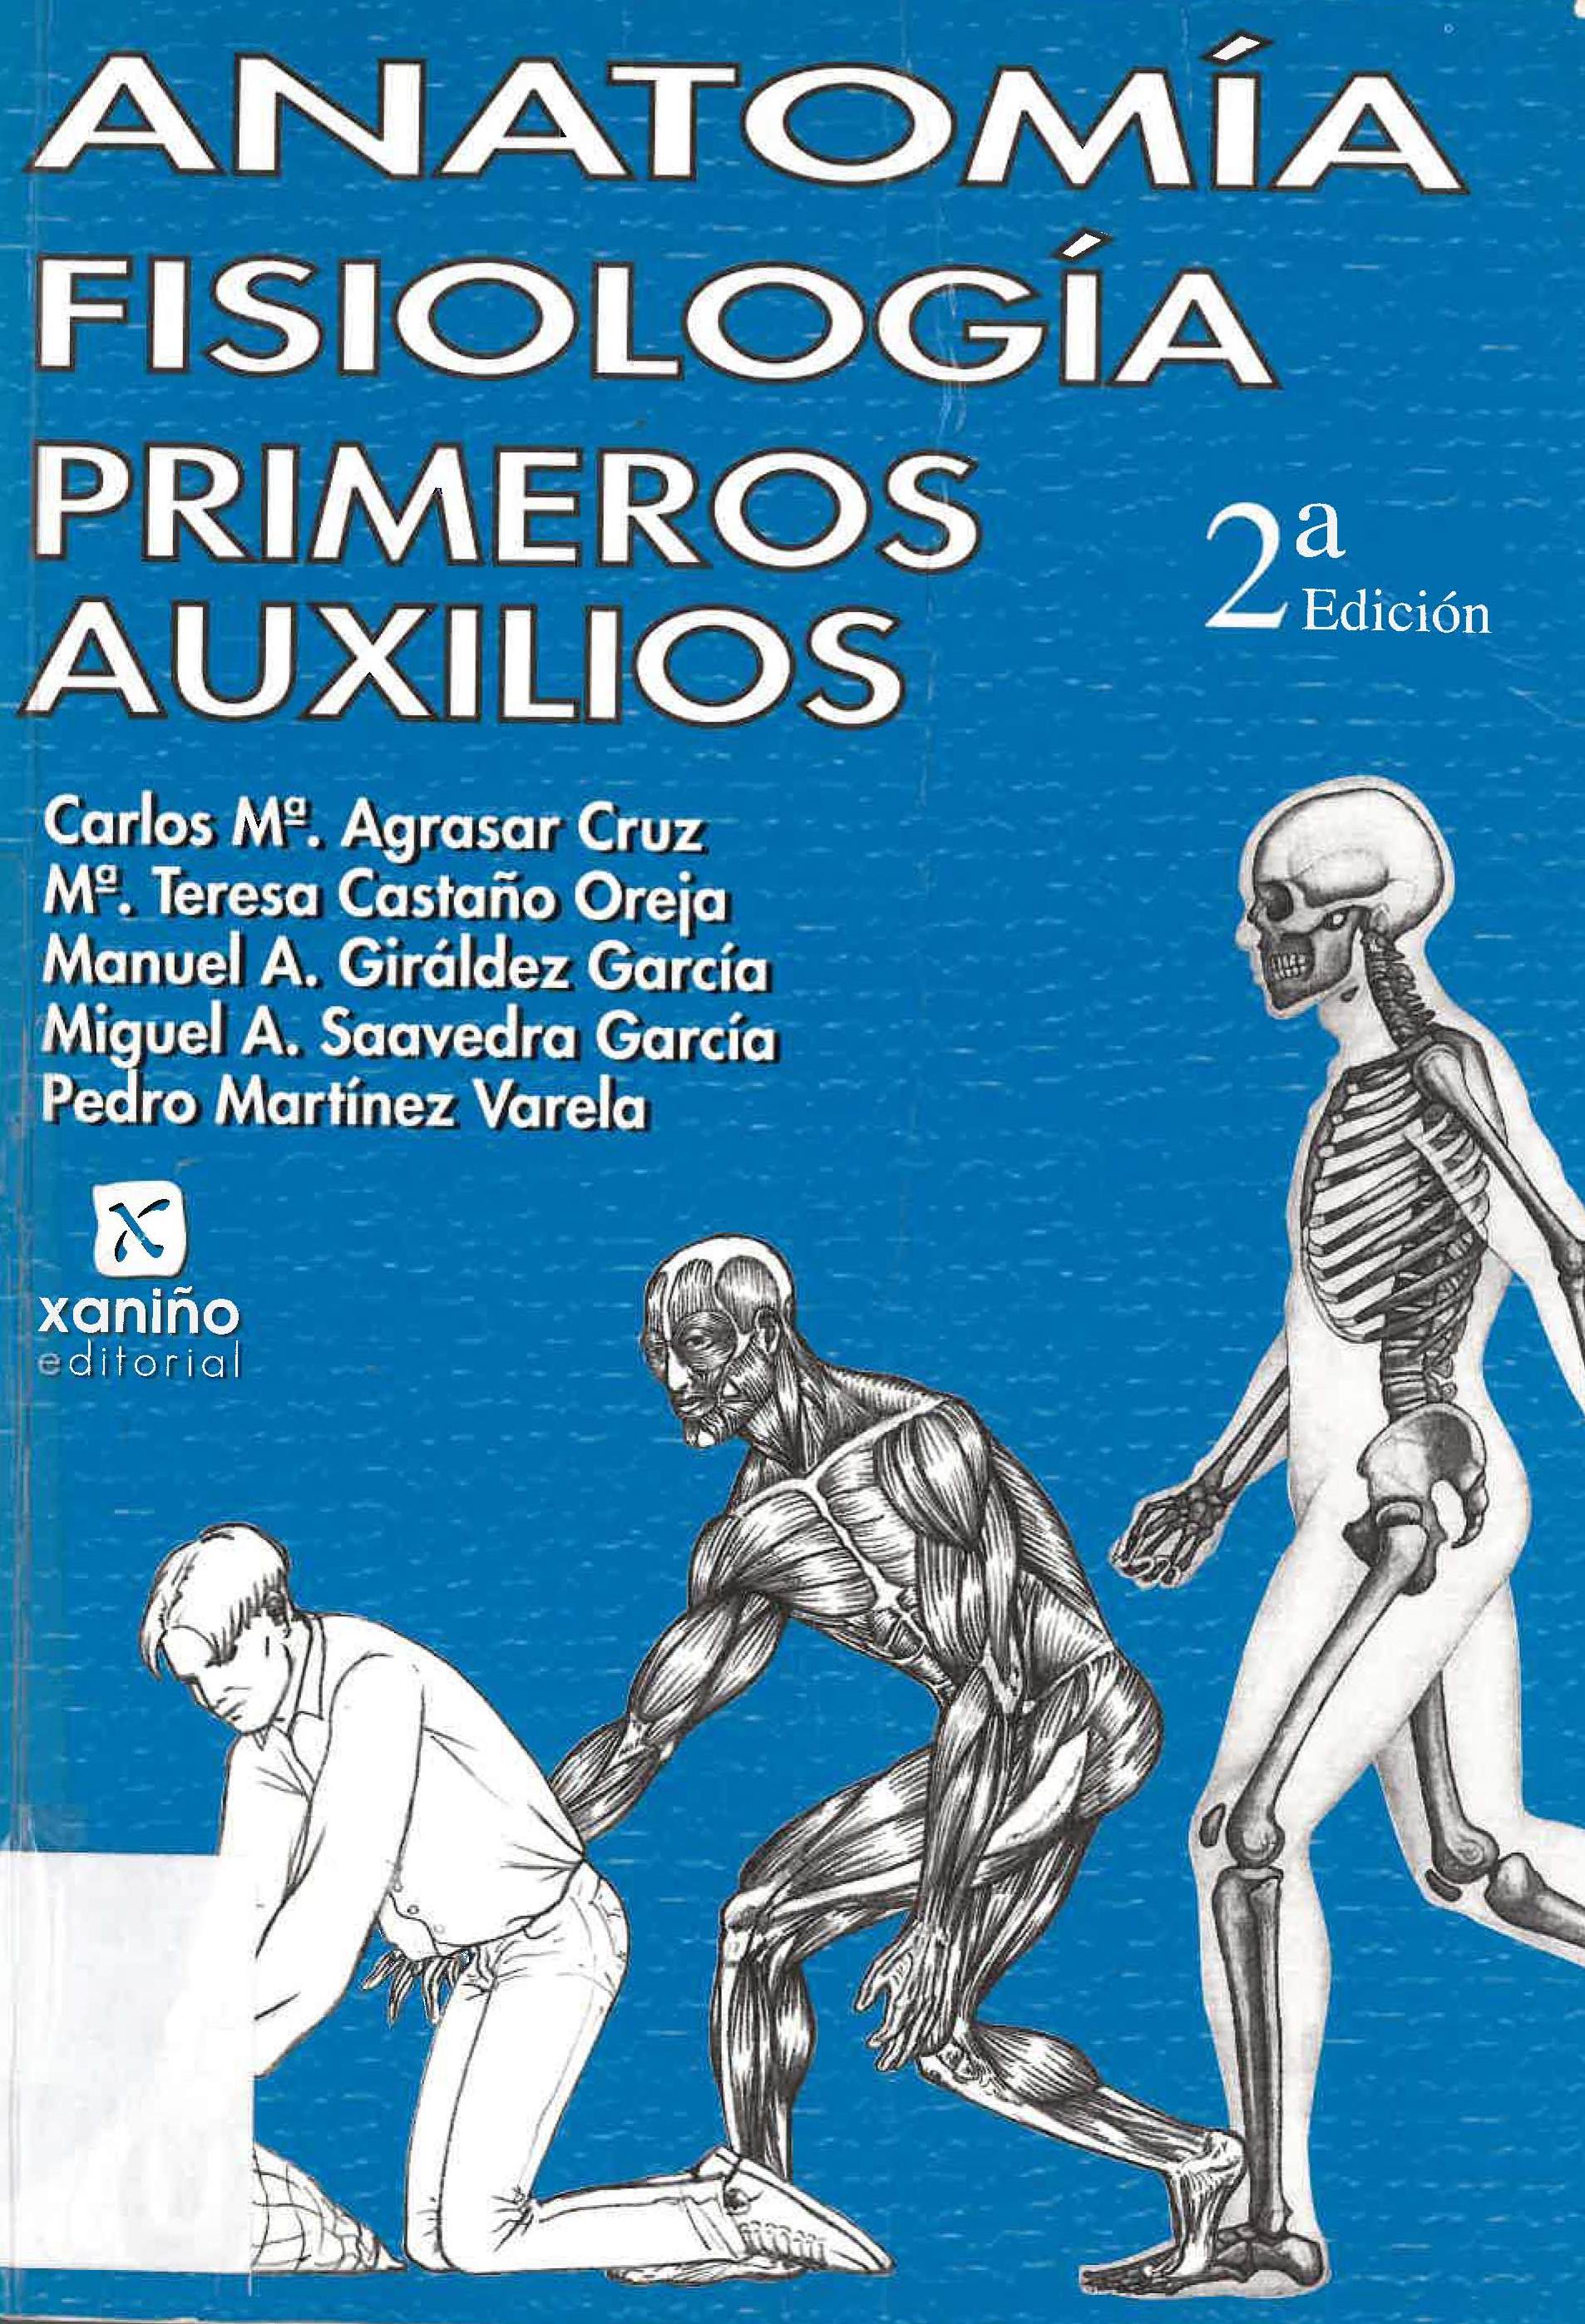 Imagen de portada del libro Anatomía, fisiología, primeros auxilios